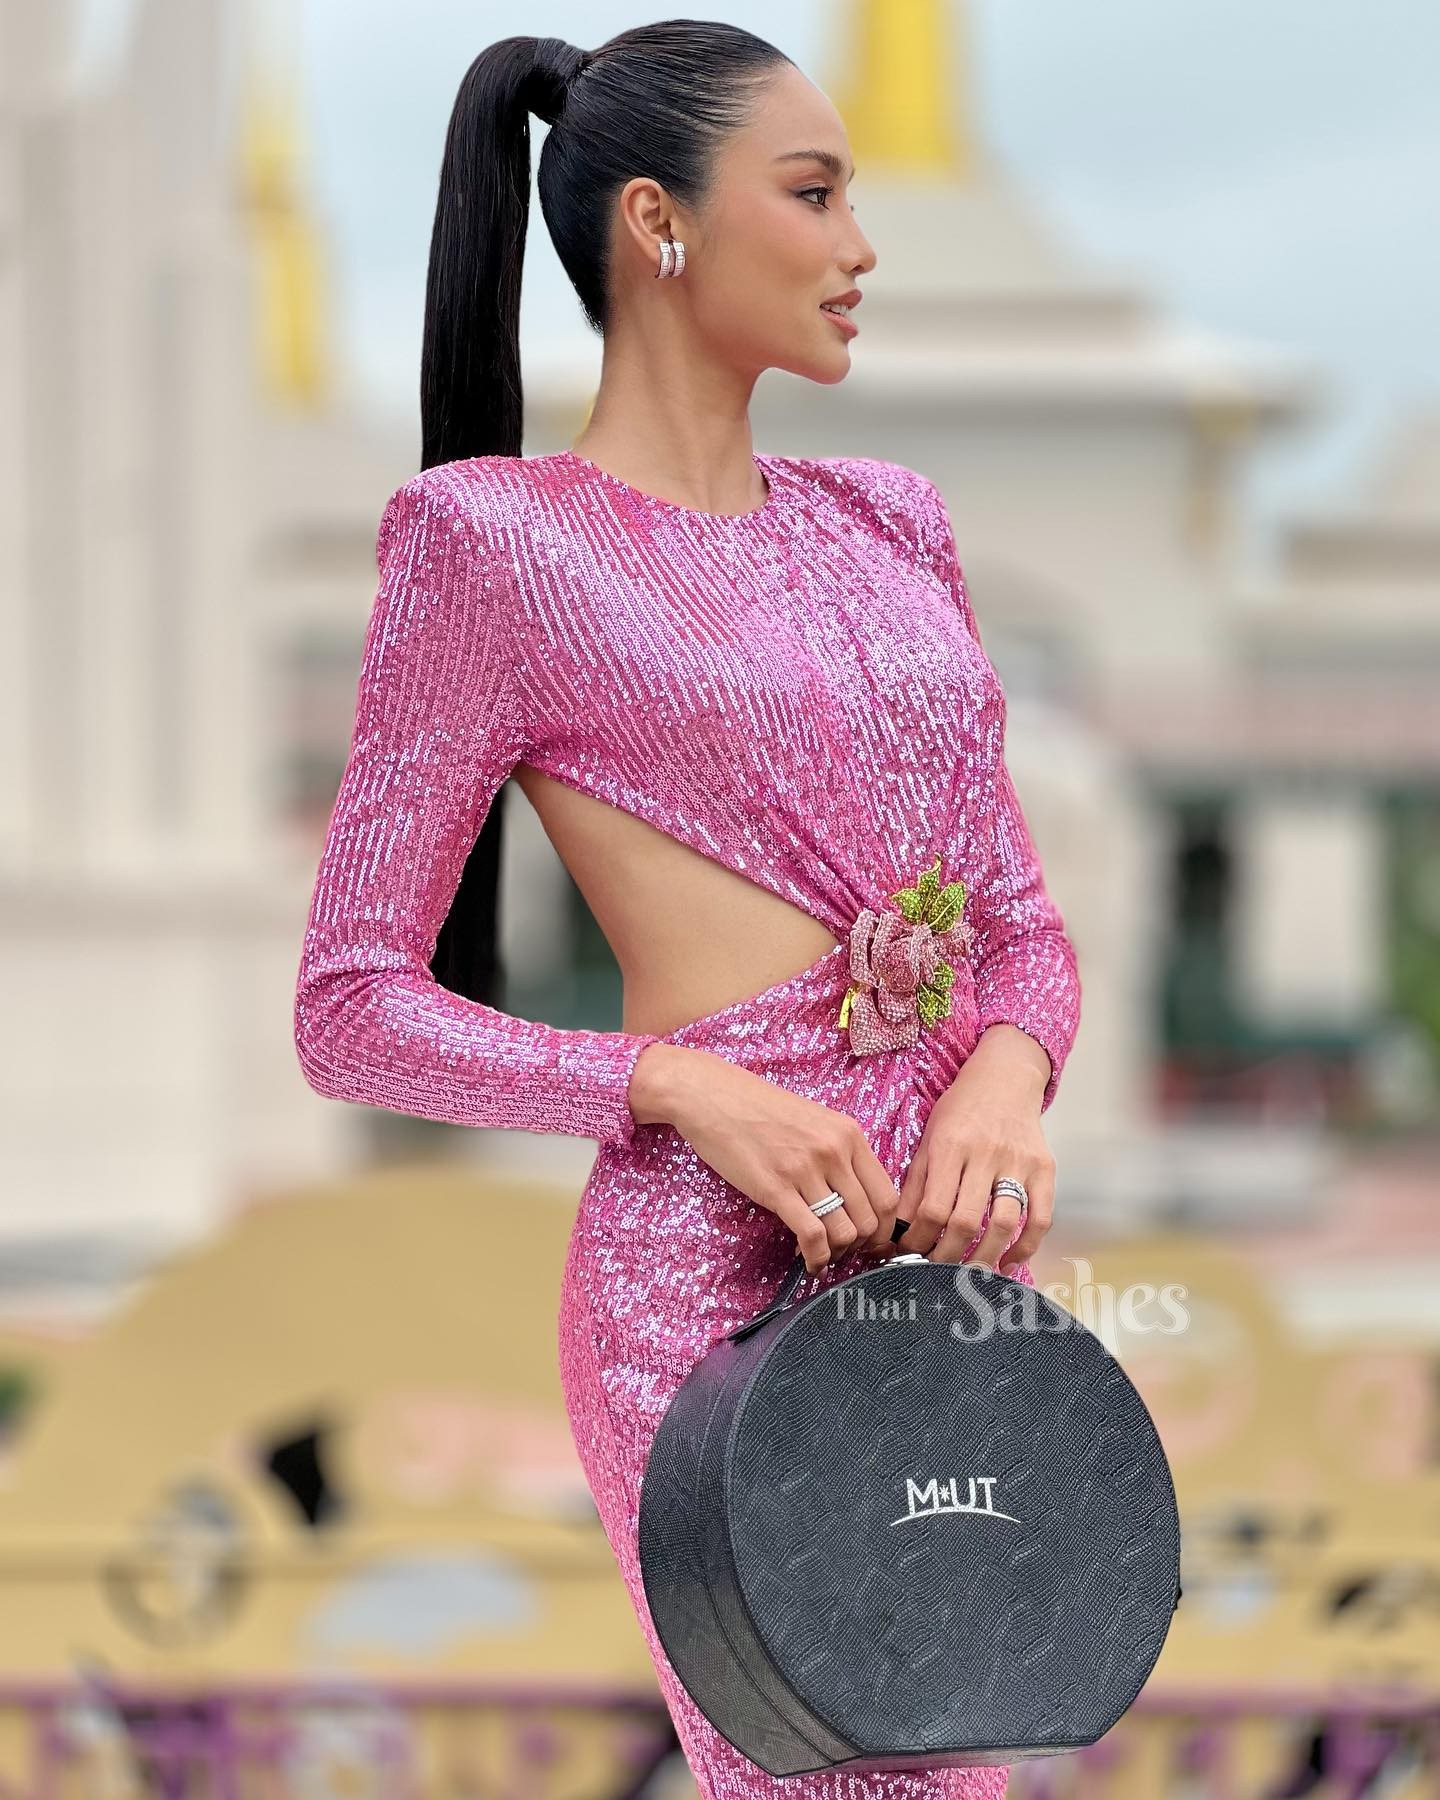 Dàn thí sinh Hoa hậu Hoàn vũ Thái Lan mặc hở bạo - Ảnh 19.